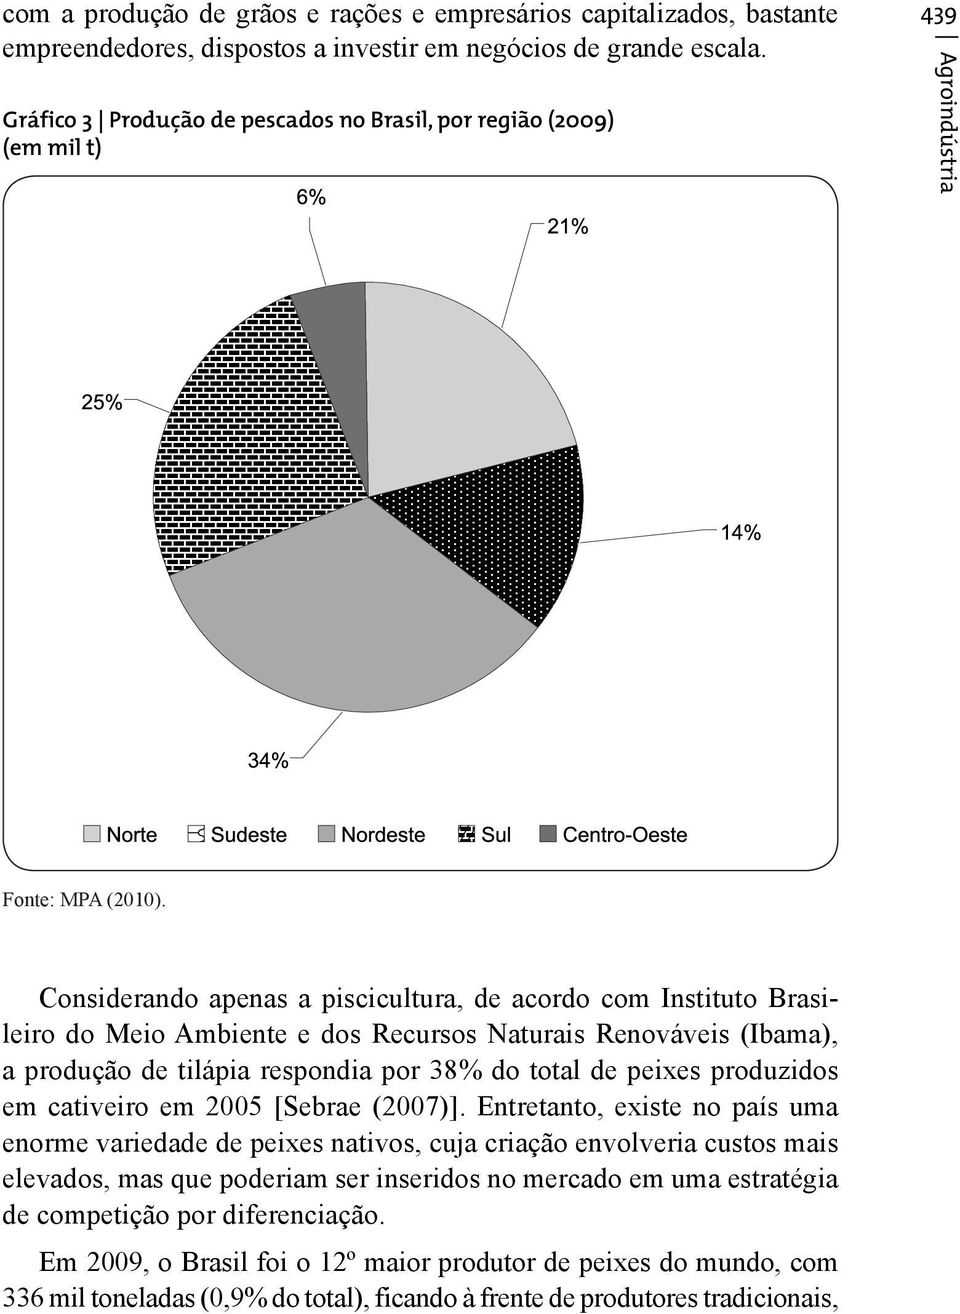 Considerando apenas a piscicultura, de acordo com Instituto Brasileiro do Meio Ambiente e dos Recursos Naturais Renováveis (Ibama), a produção de tilápia respondia por 38% do total de peixes